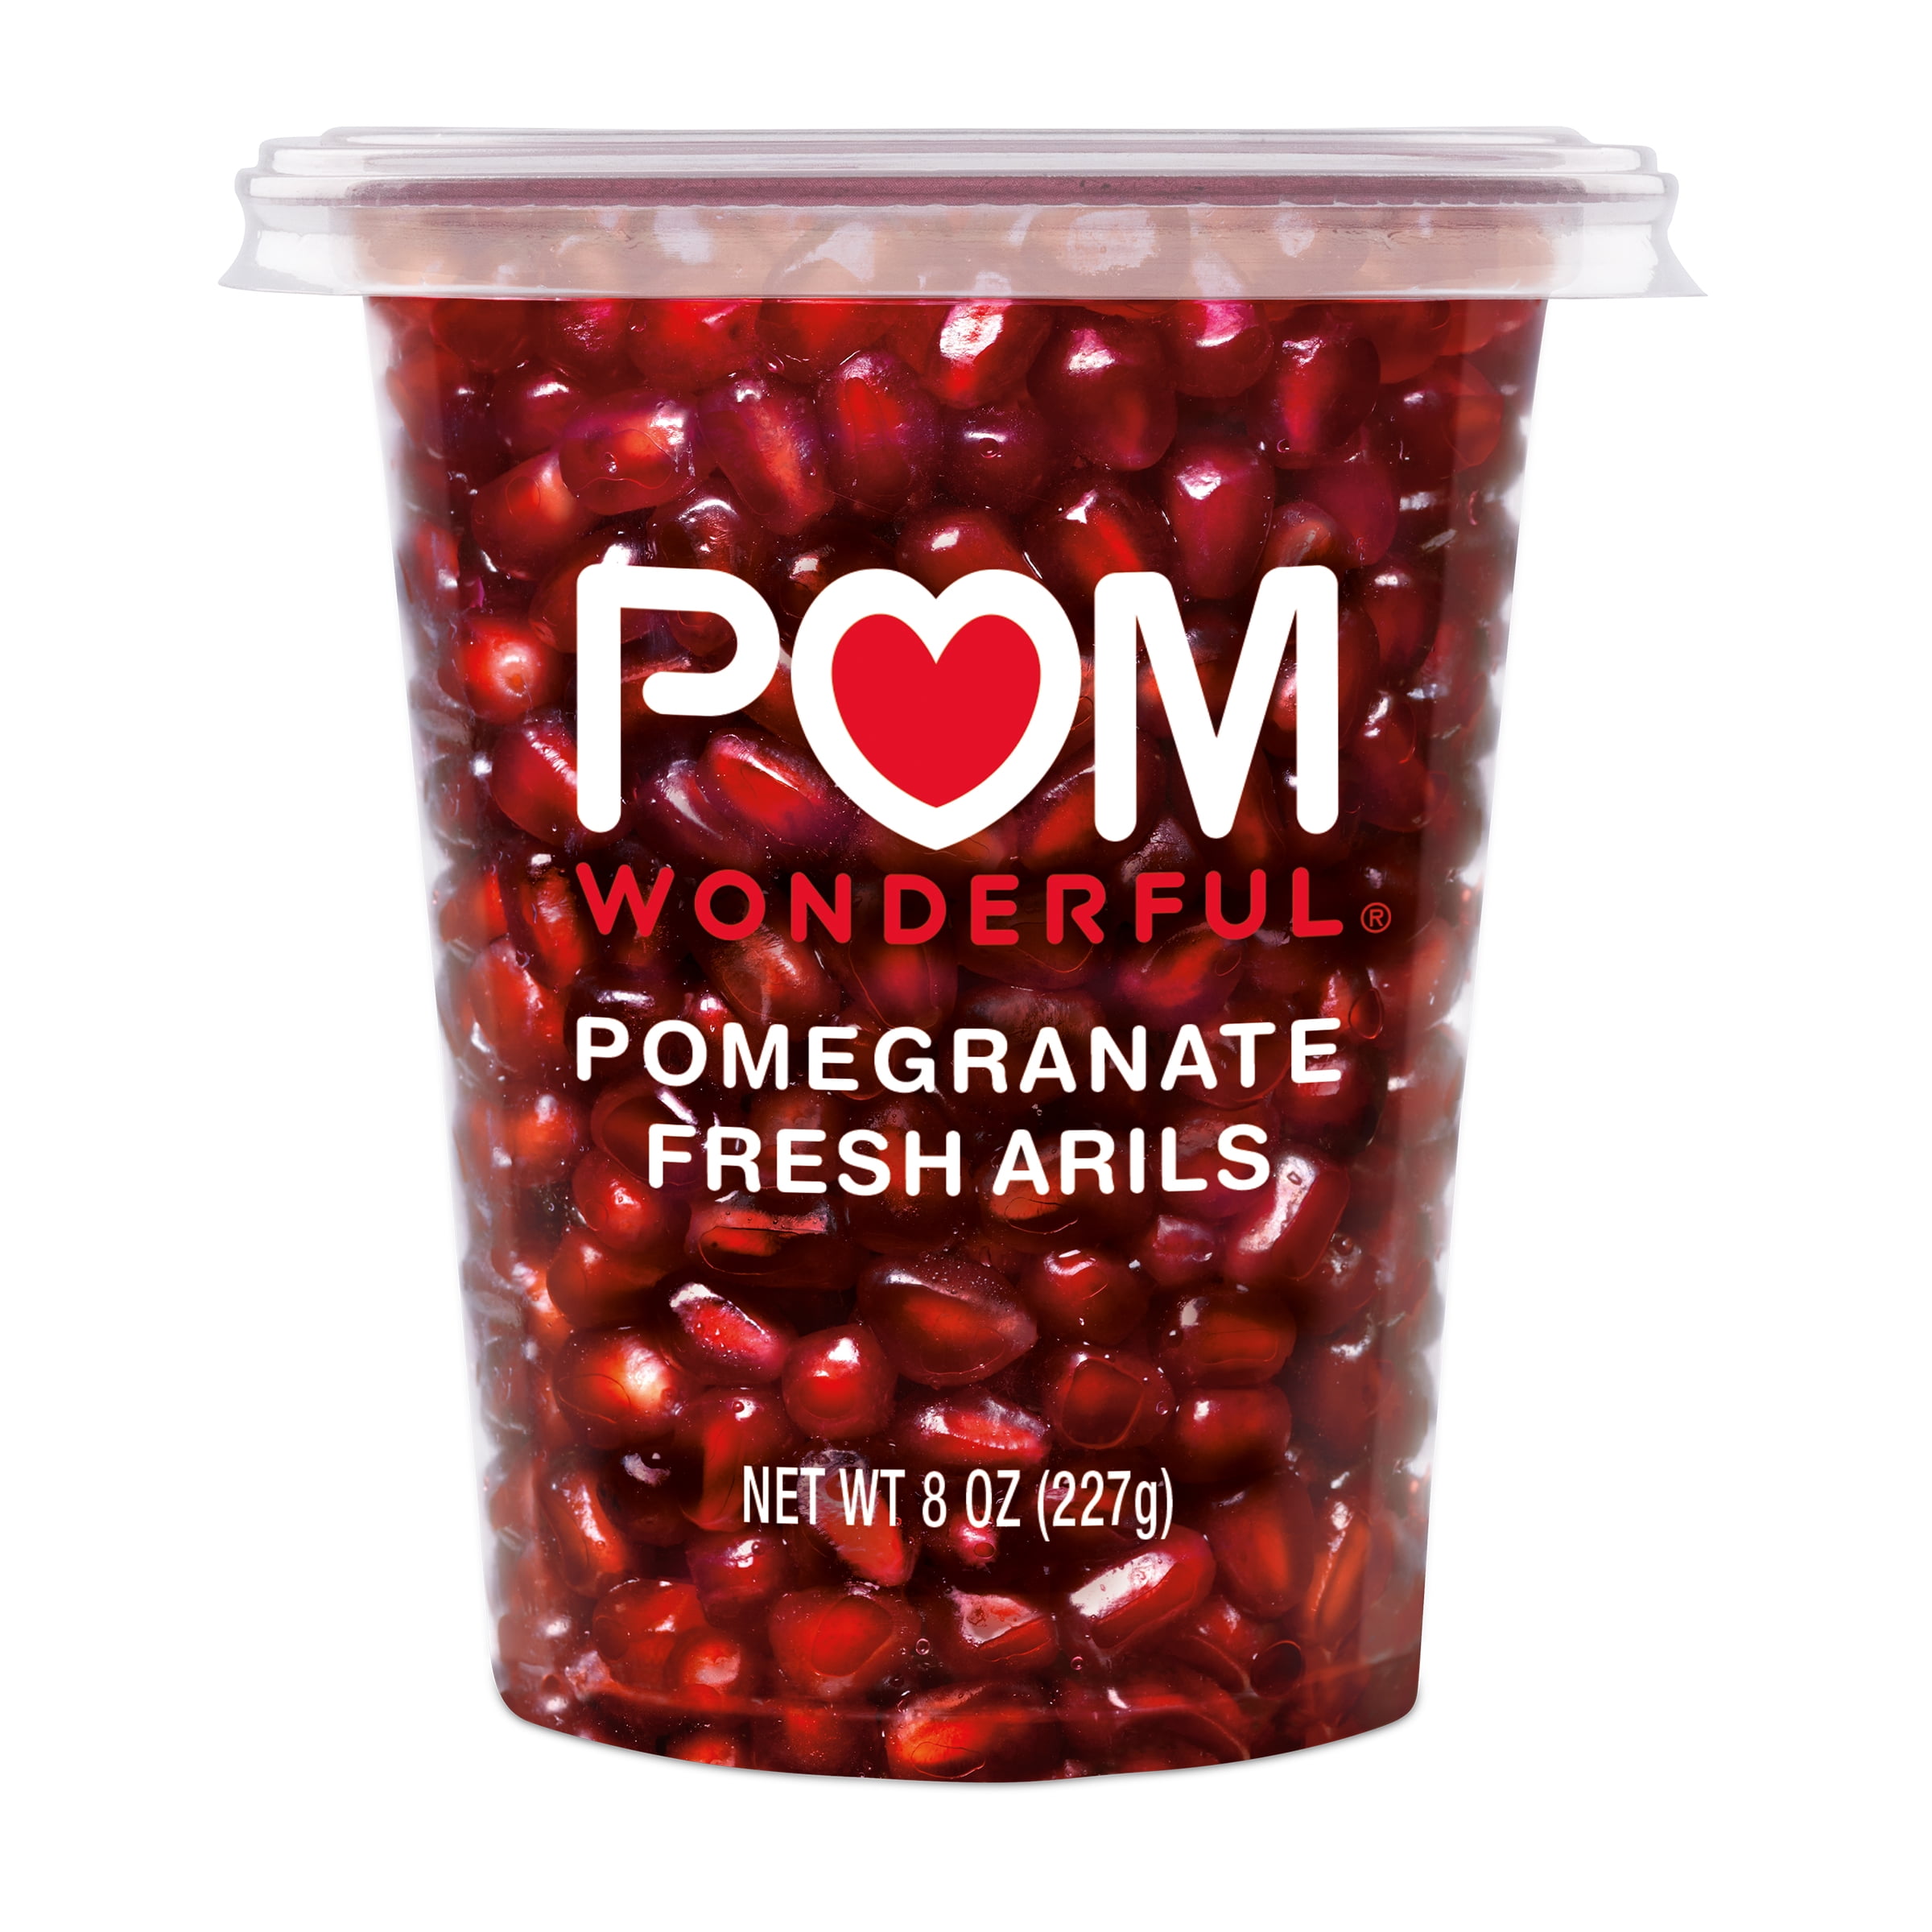 Elemental Vedrørende hævn POM Wonderful Pomegranate Fresh Arils 8oz - Walmart.com